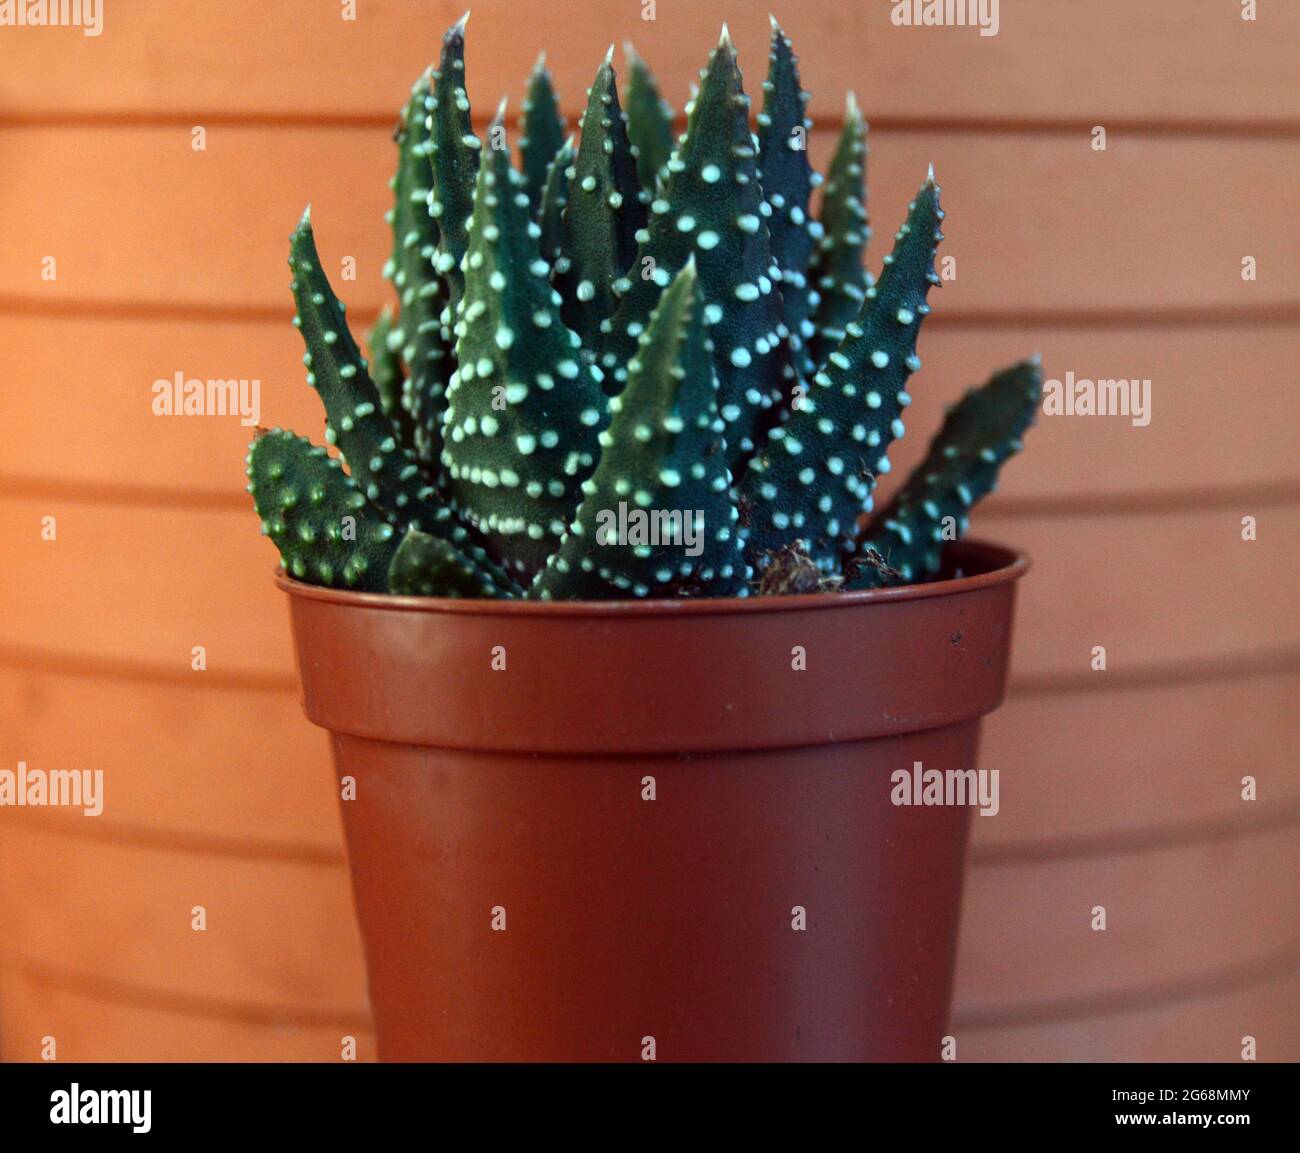 Haworthia Attenuata (Zebra Haworthia) Cactus Grown in a Flowerpot. Stock Photo